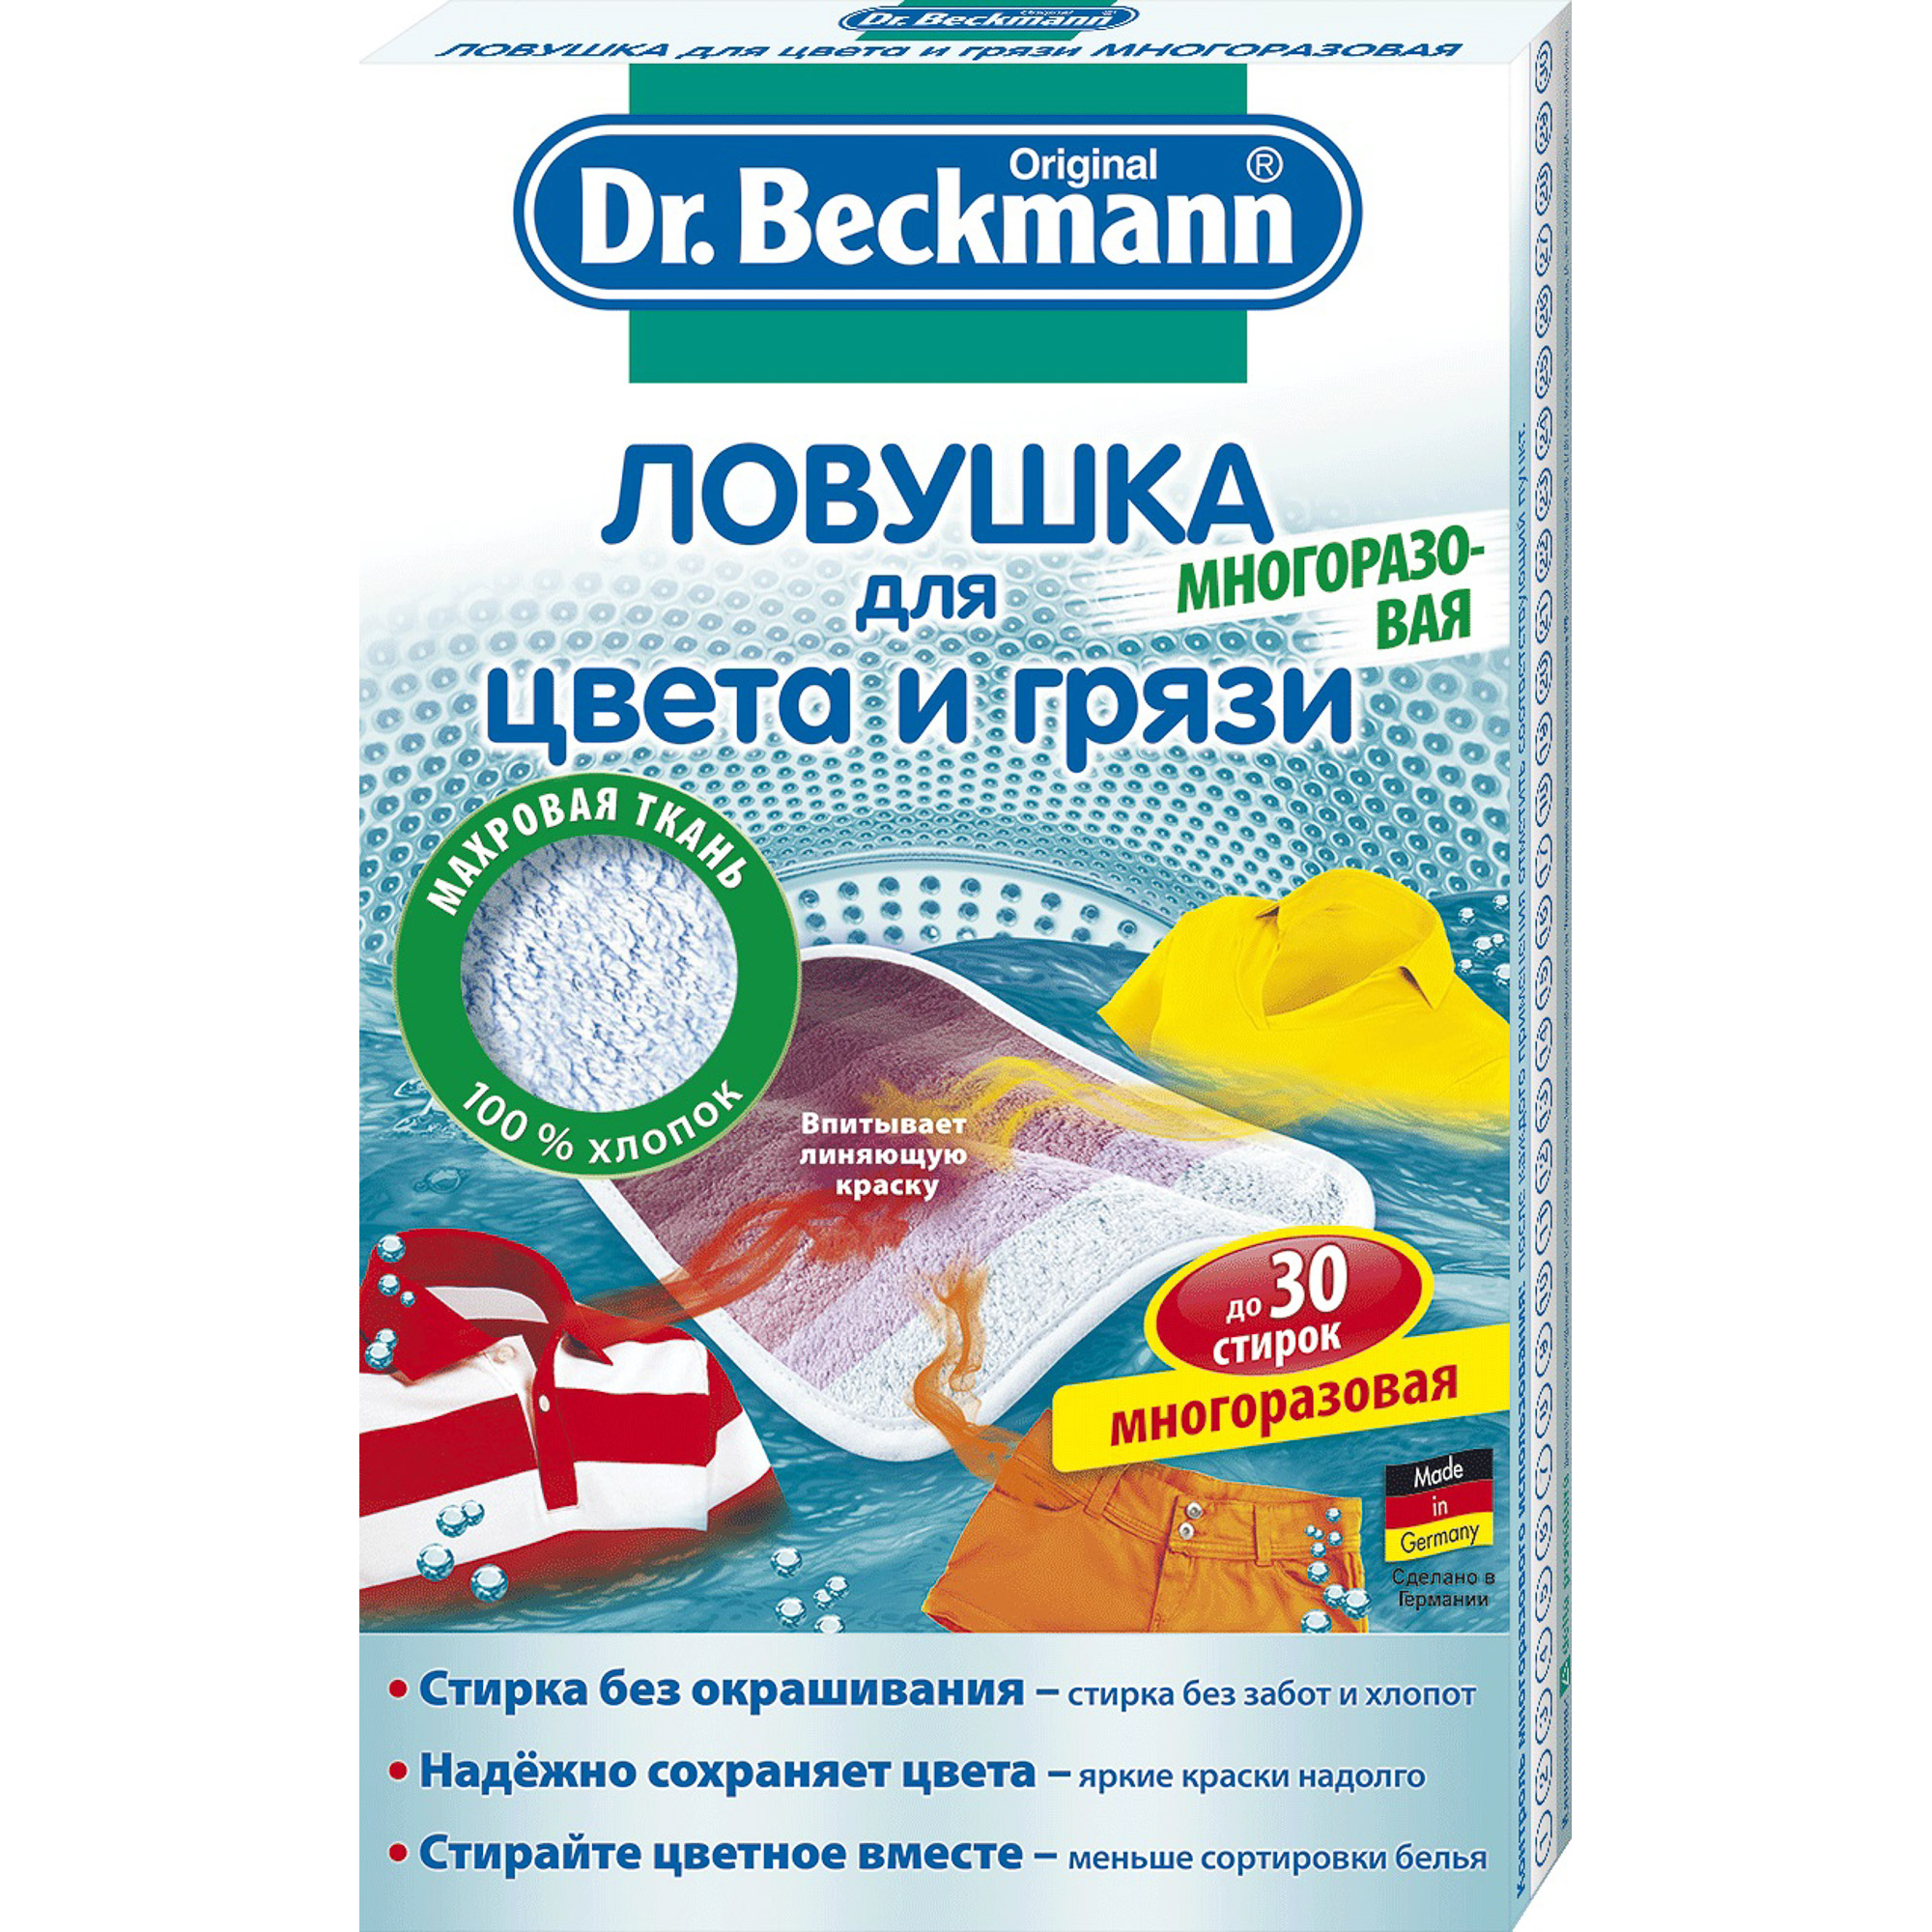 Ловушка для цвета и грязи Dr.Beckmann многоразовая салфетки для стирки тканей разных цветов 60 шт